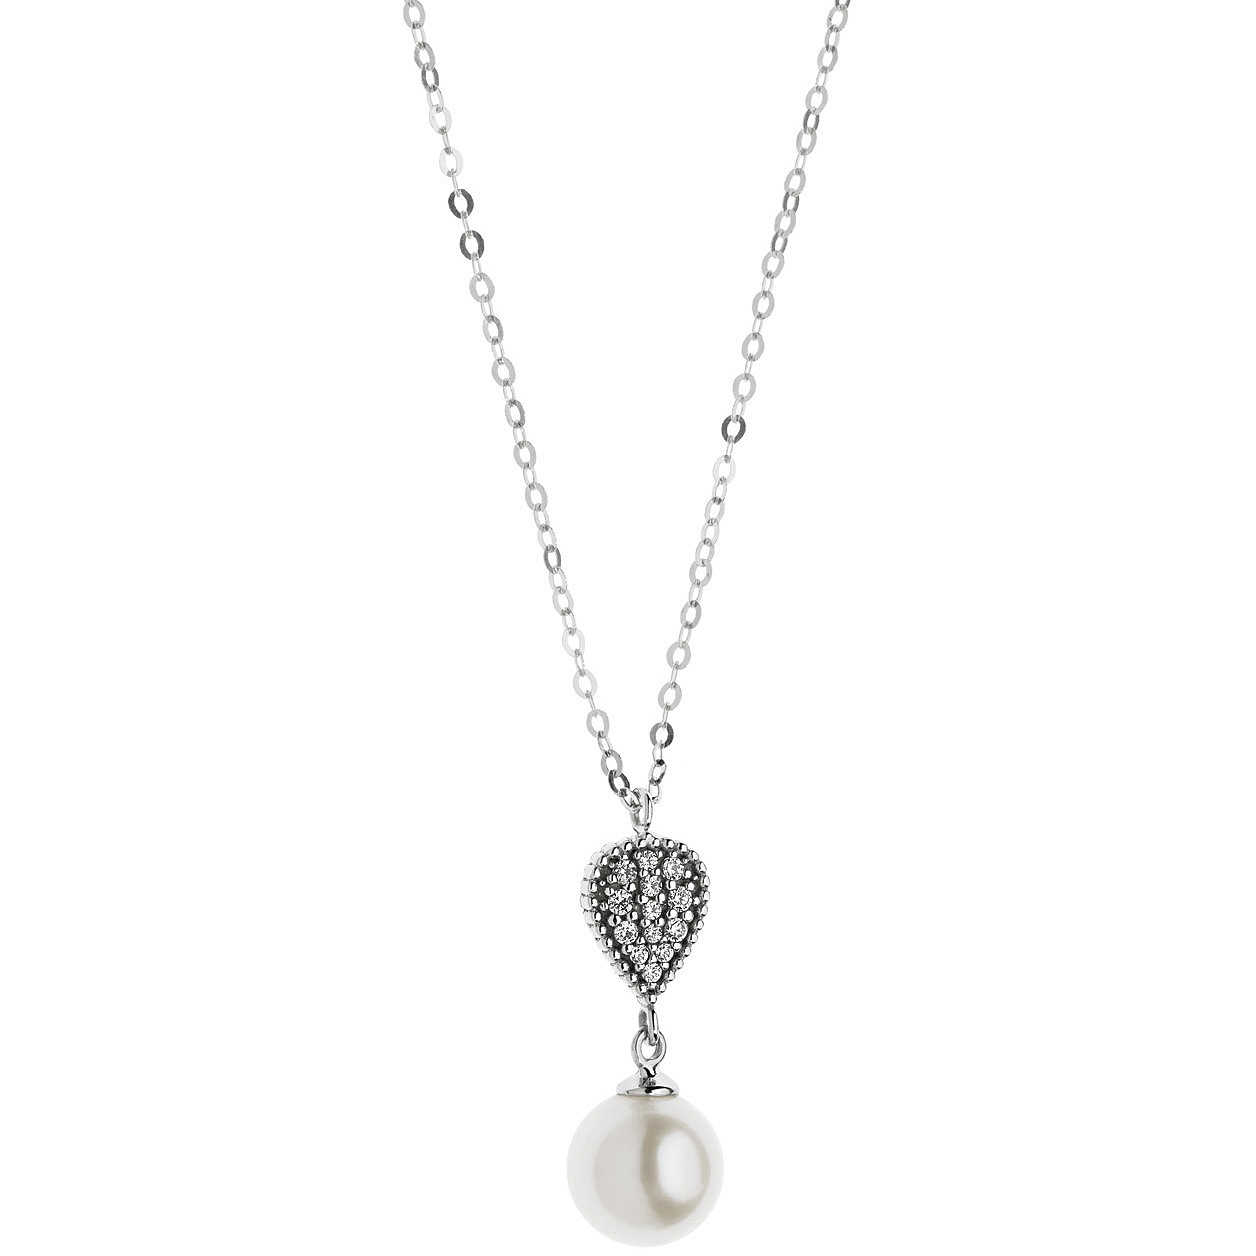 GLP 445 Women's Comete Gioielli Diamond Patterns Necklace